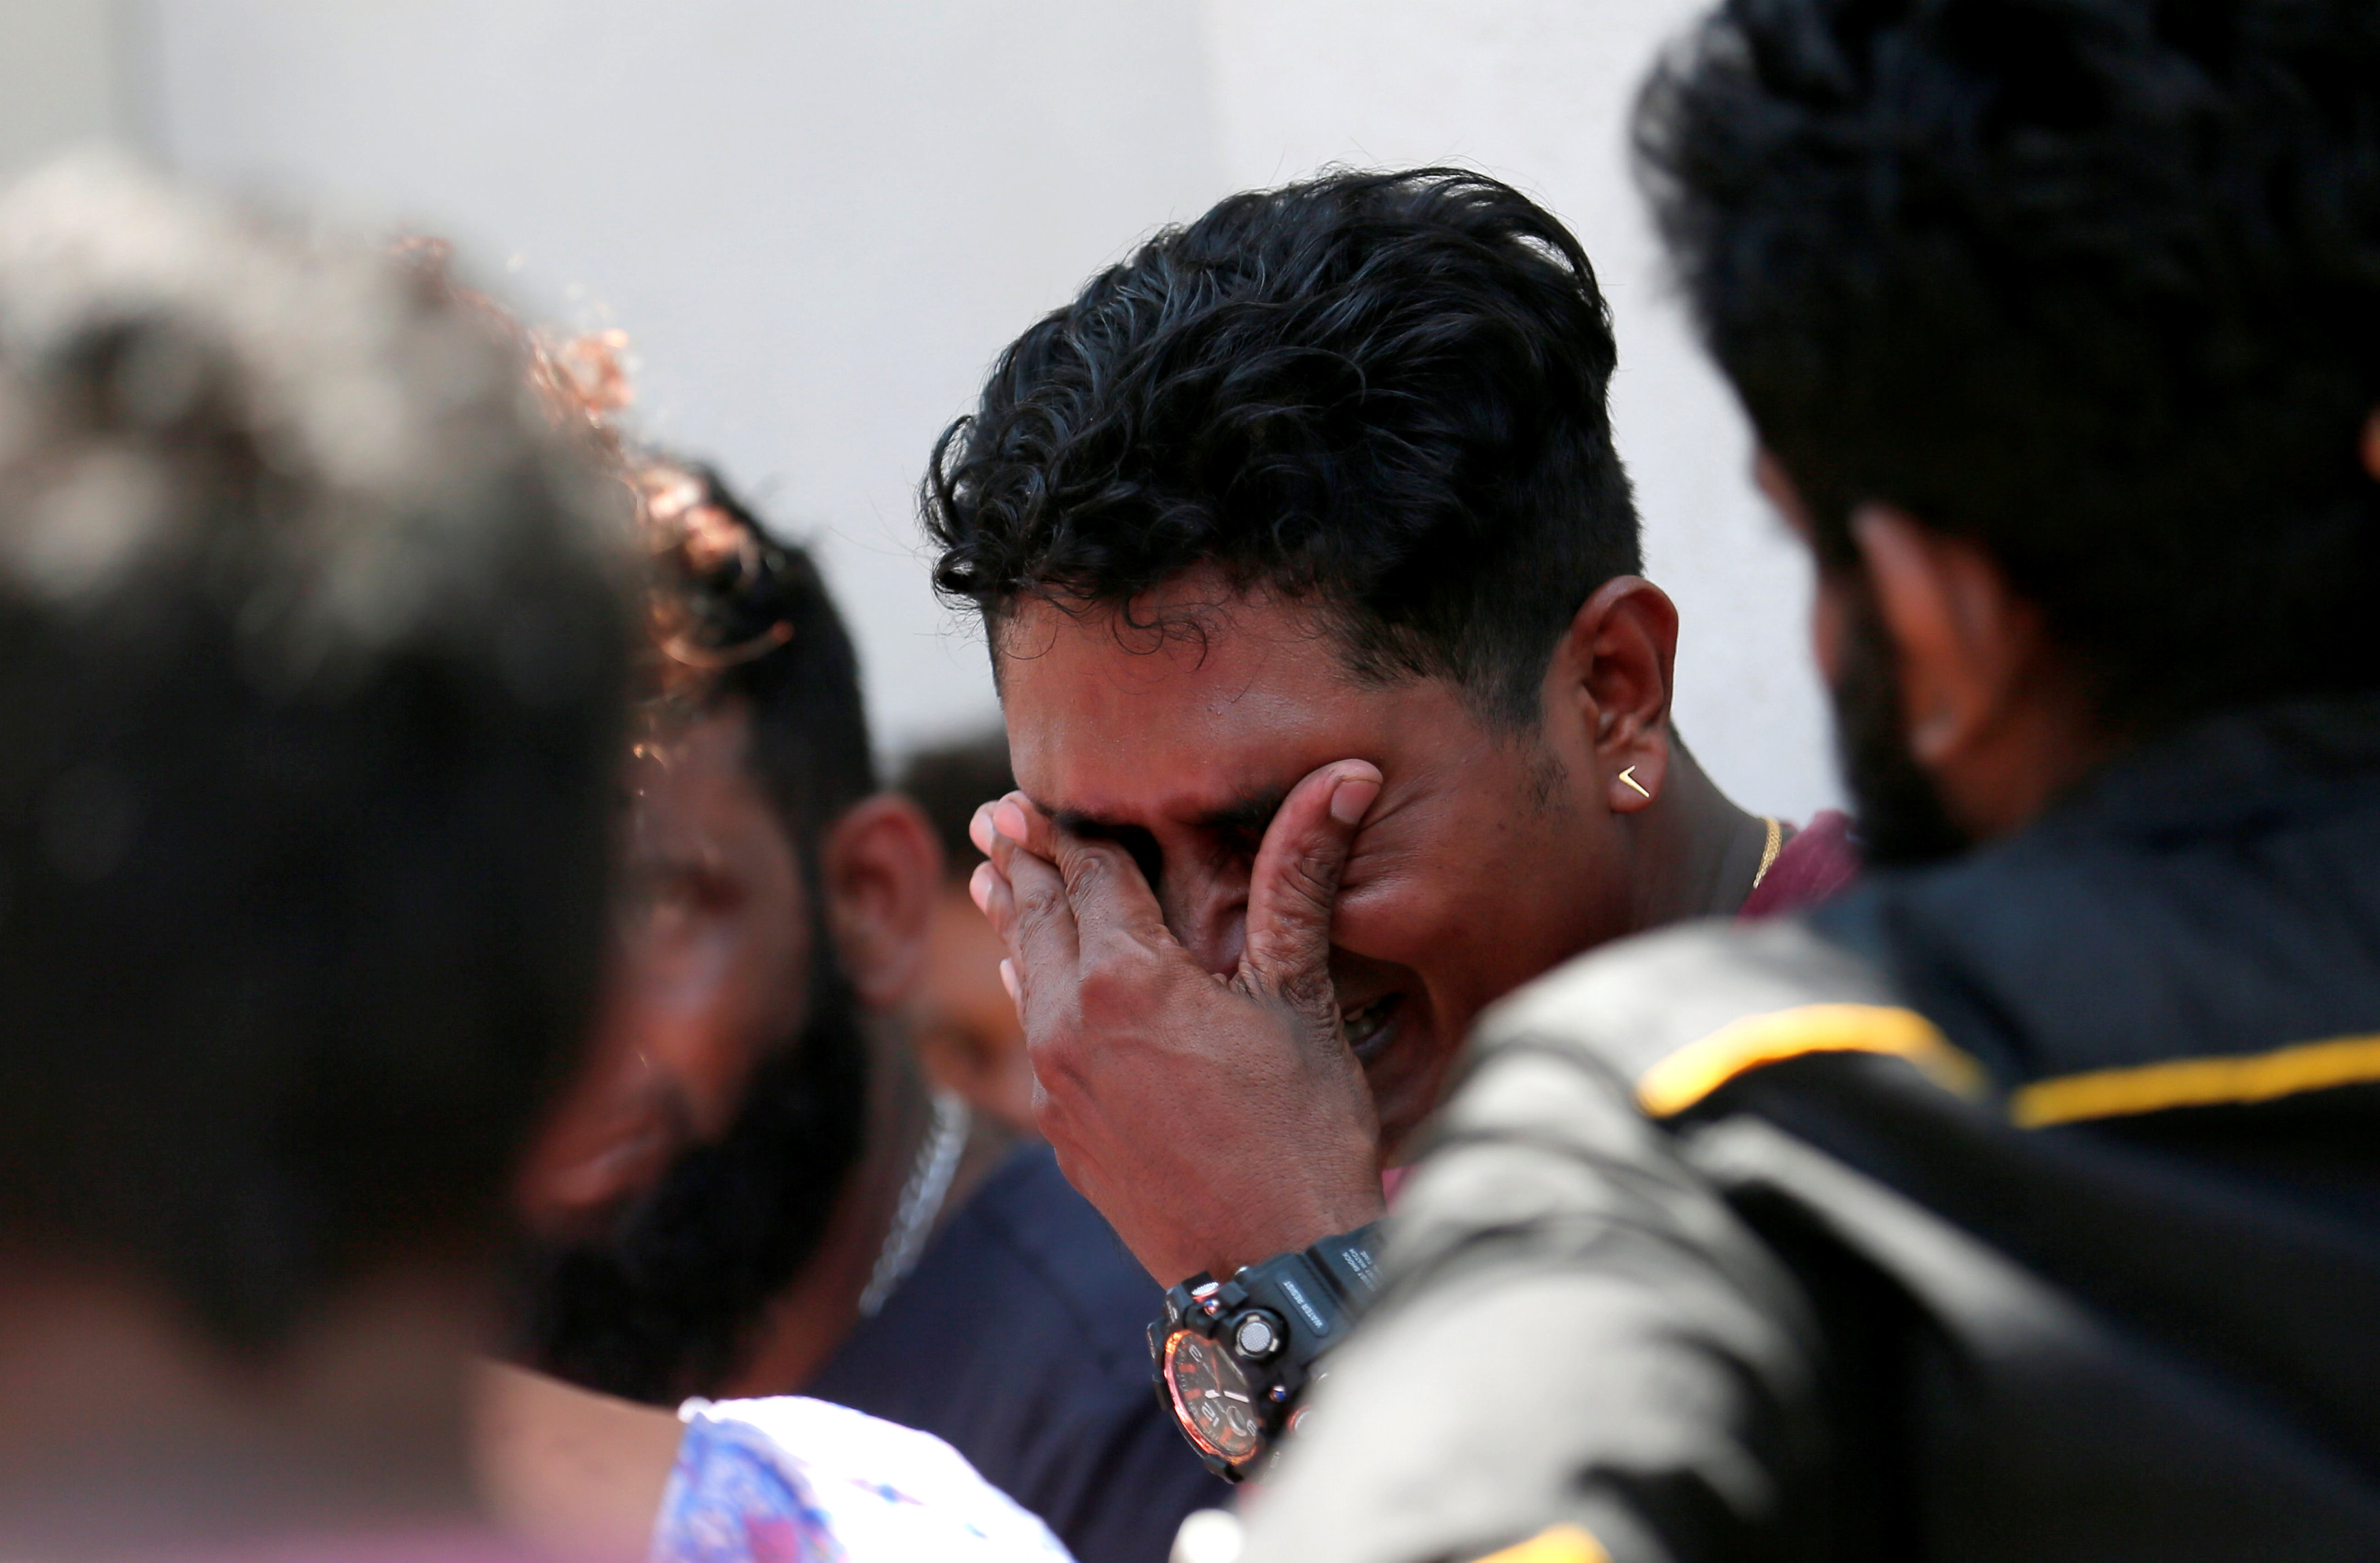 EN VIDEO: El momento de la explosión de una de las bombas que dejaron cientos de muertos en Sri Lanka